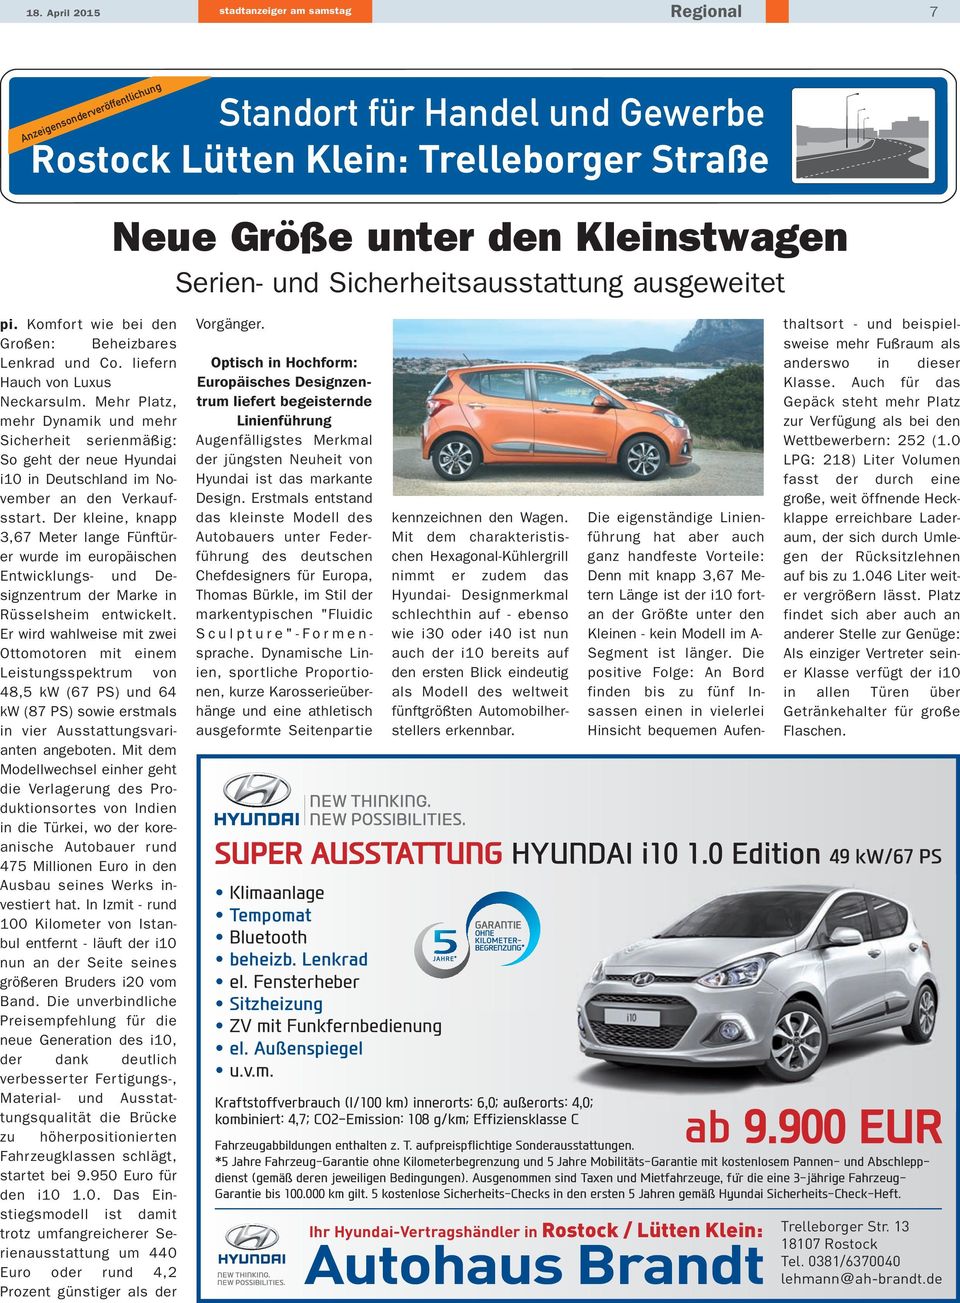 Mehr Platz, ehr Dynamik und mehr icherheit serienmäßig: o geht der neue Hyundai 10 in Deutschland im Noember an den Verkaufstart.